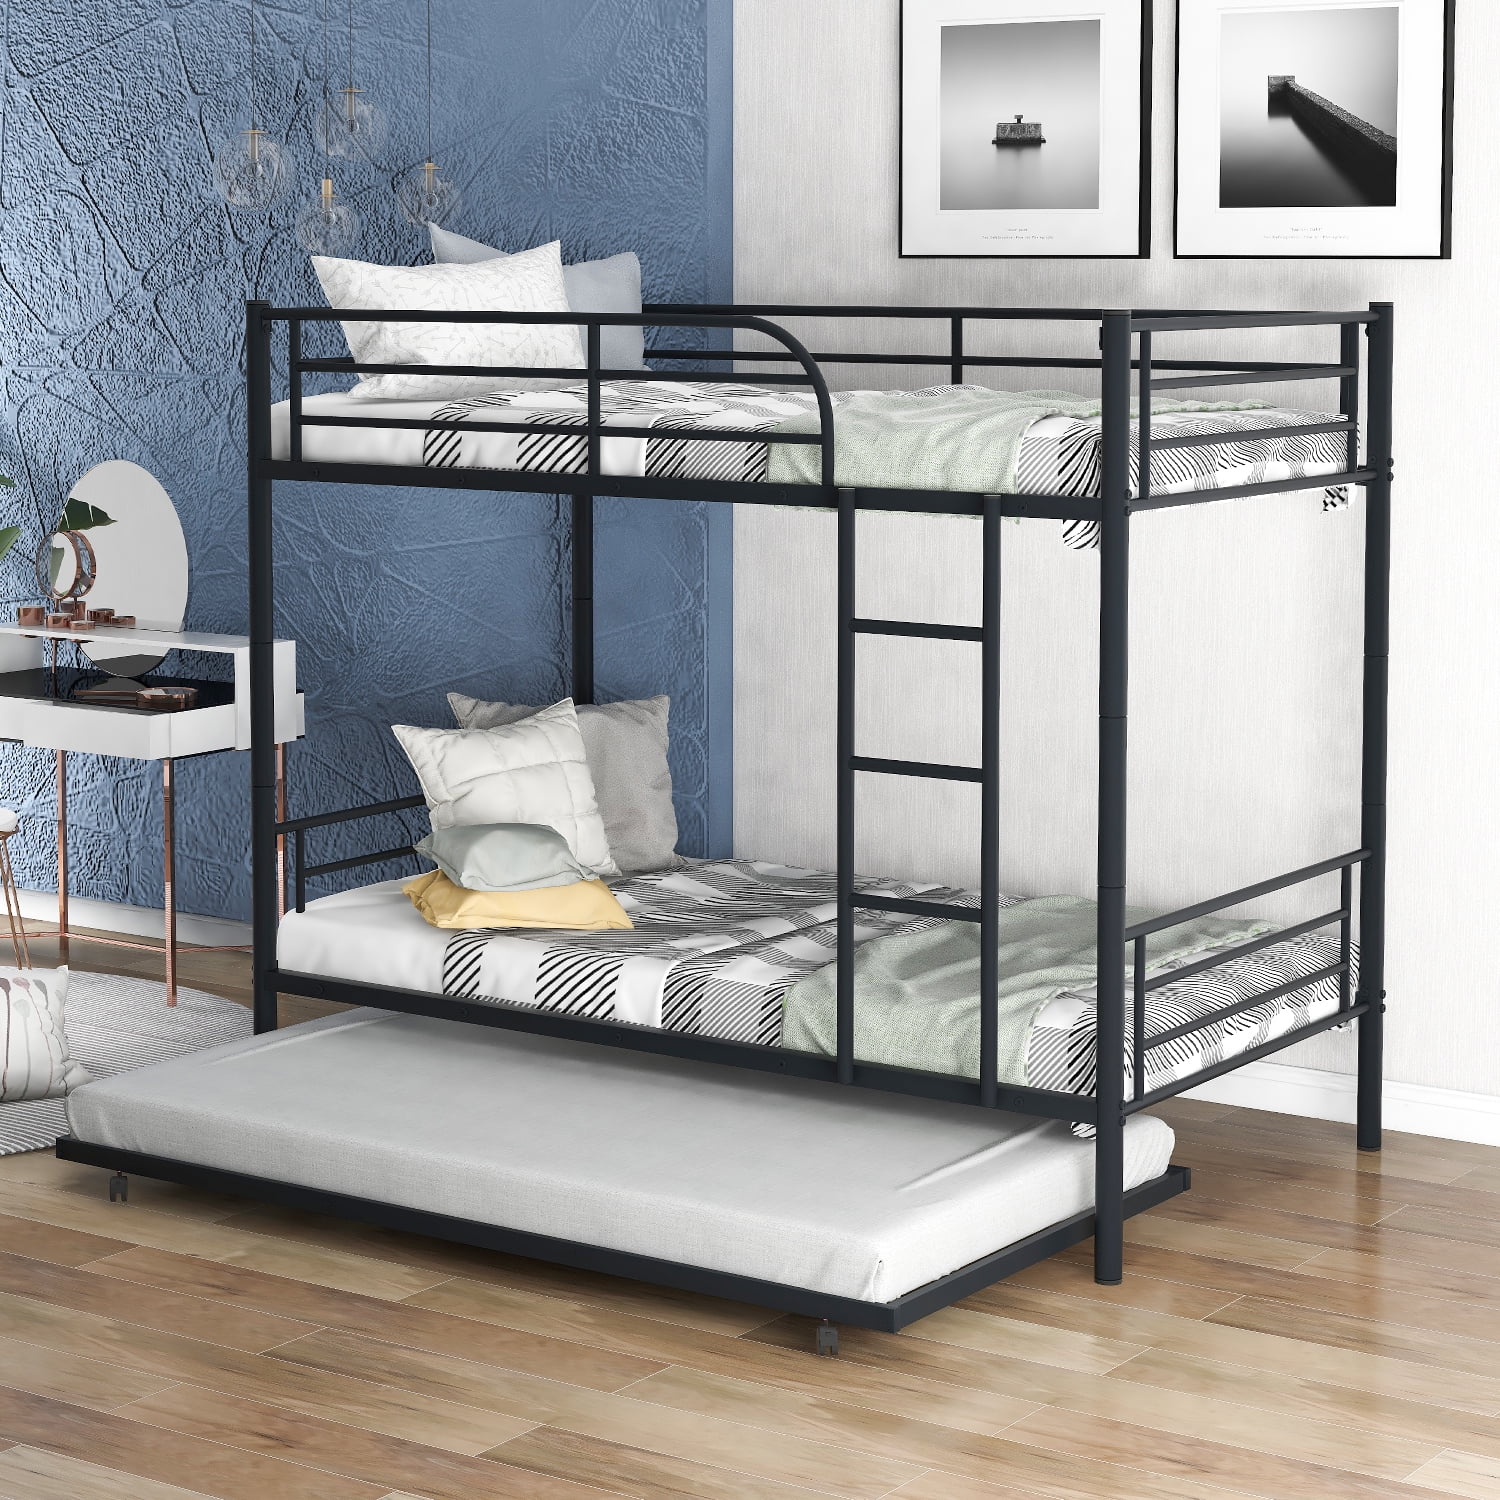 Metal Twin over Bunk Beds Frame Ladder Bedroom Dorm for Children Adult Gray